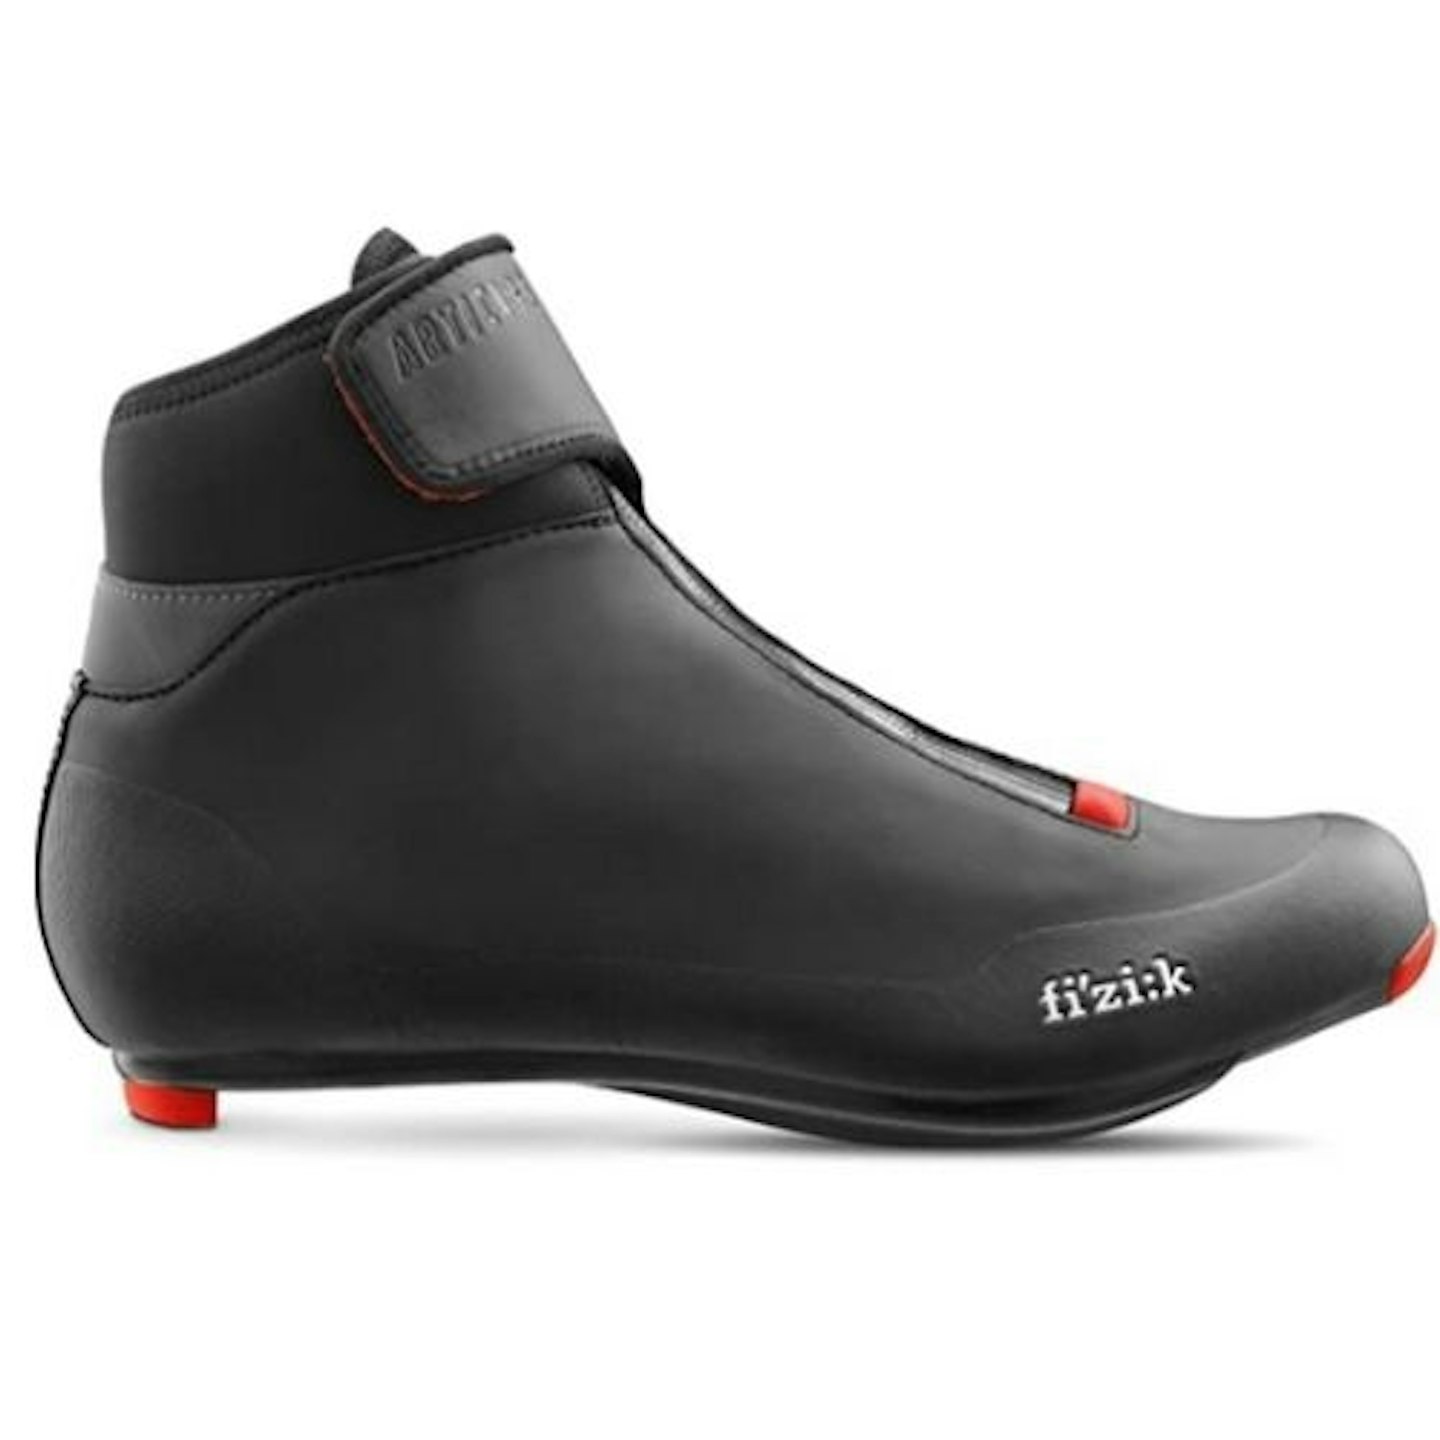 Fizik R5 Artica, Men's Cycling Shoe